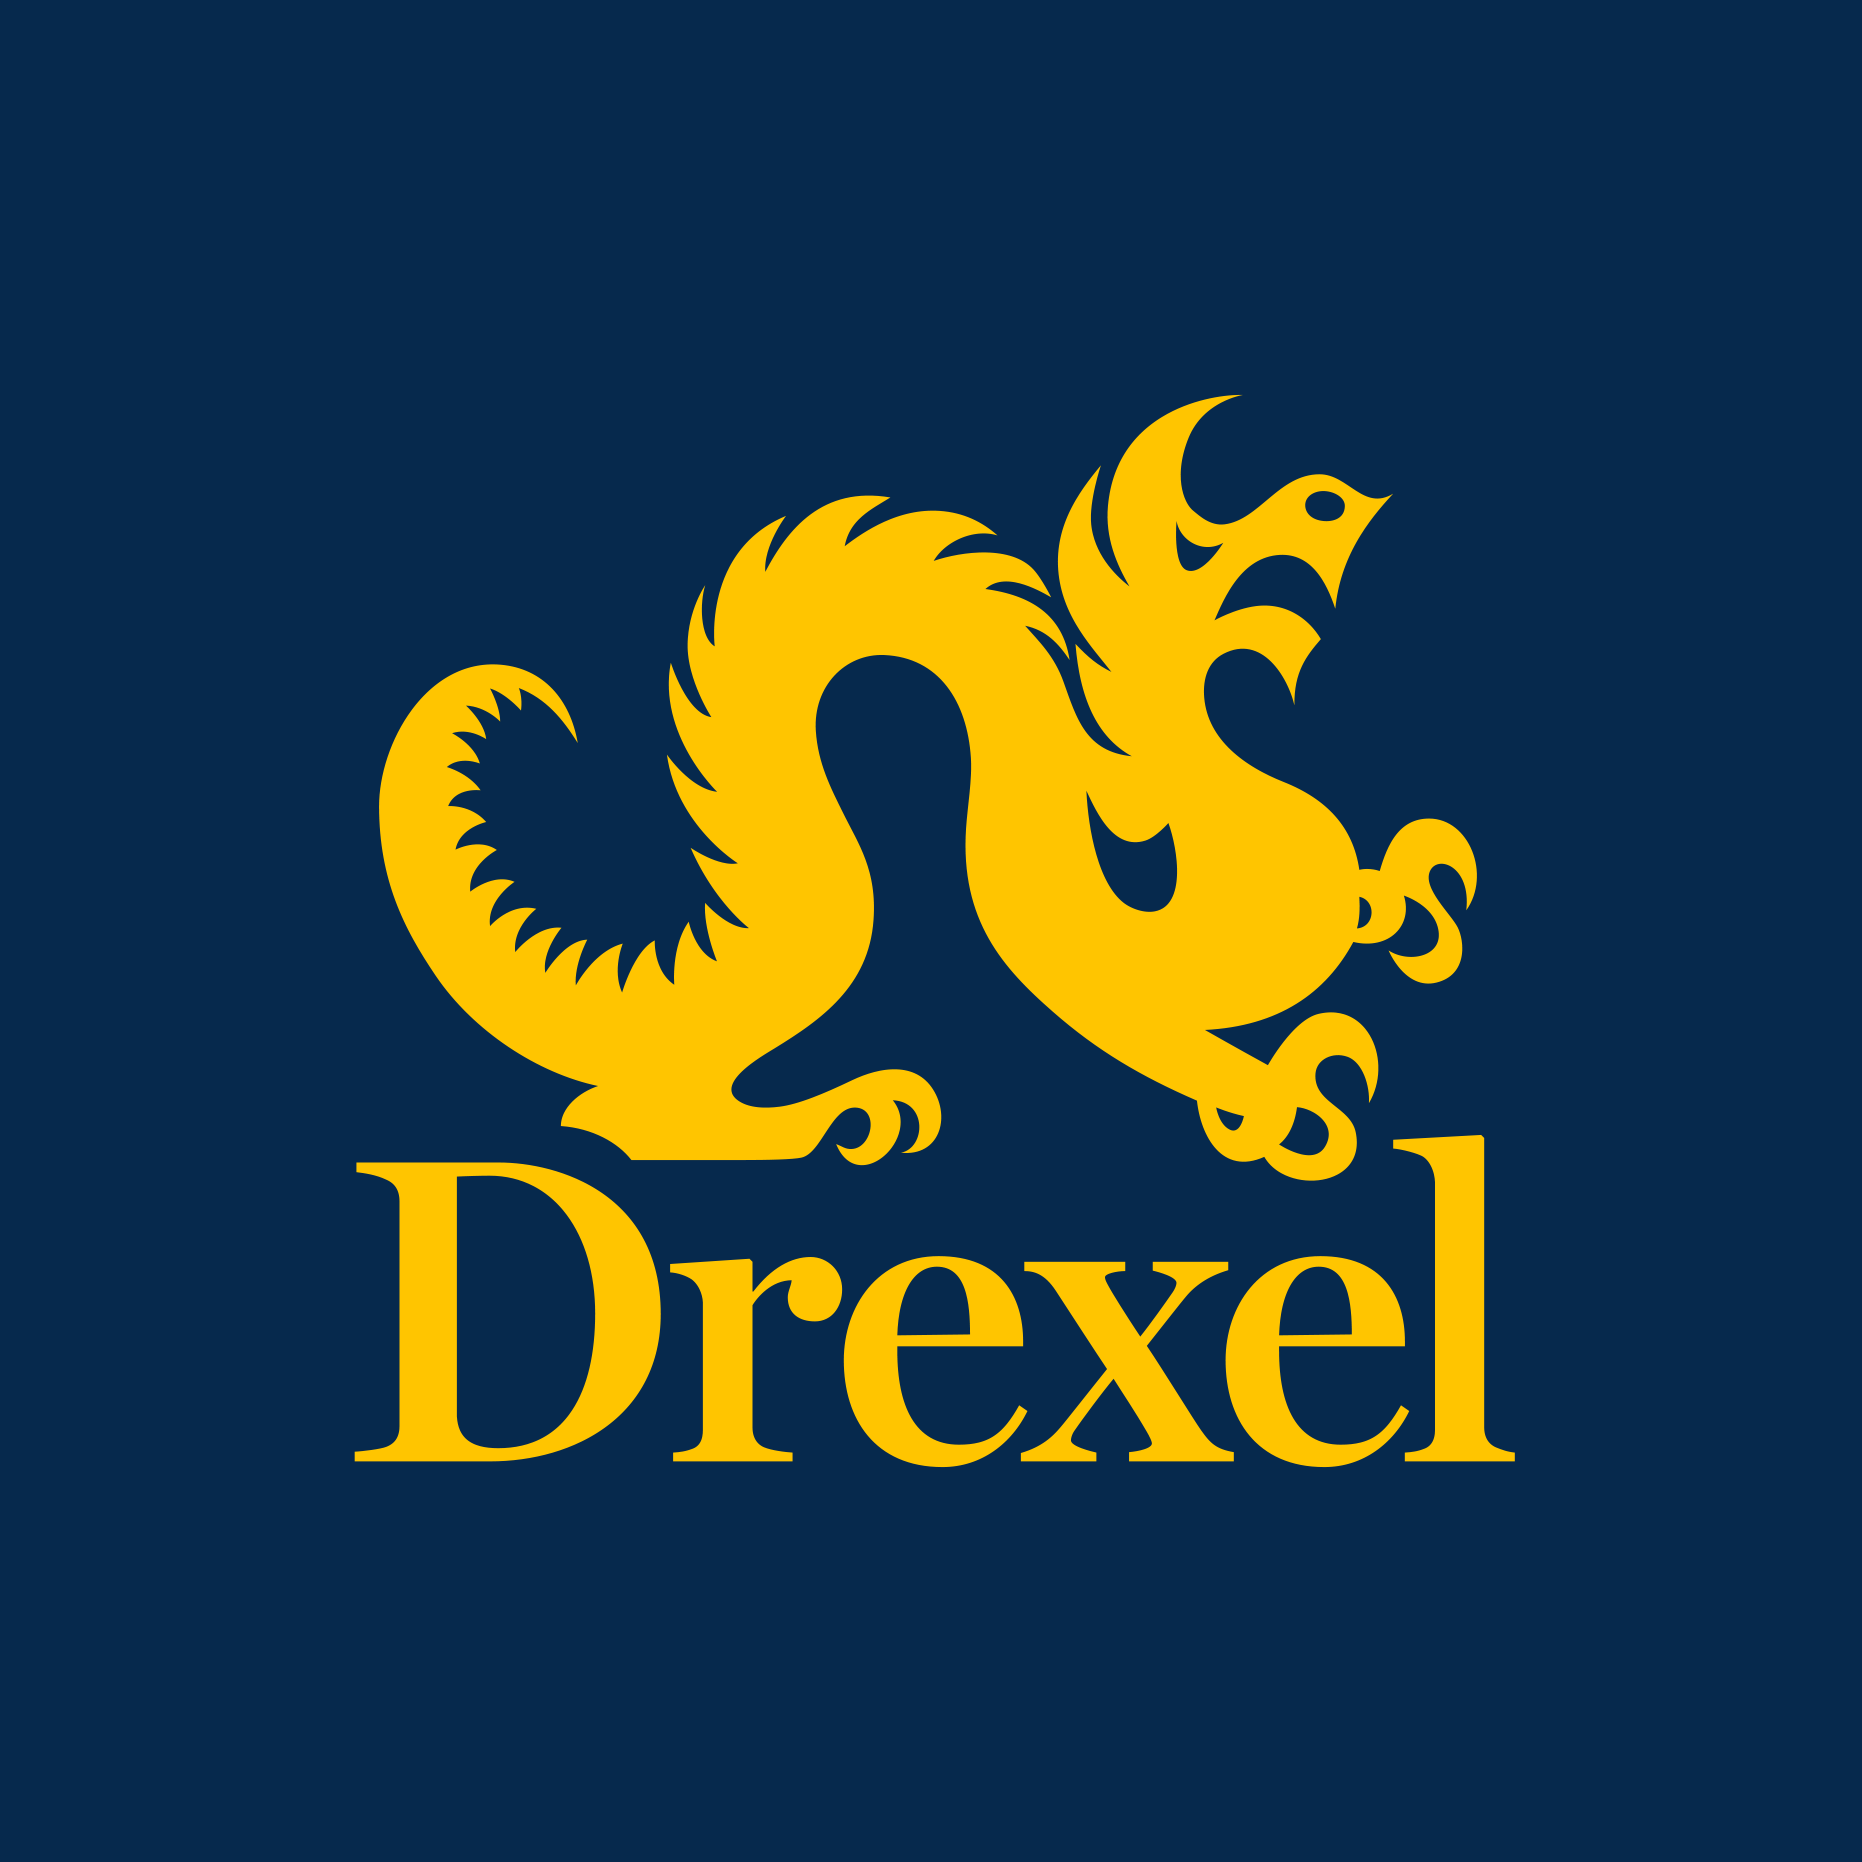 Drexel logo for twitter - blue background